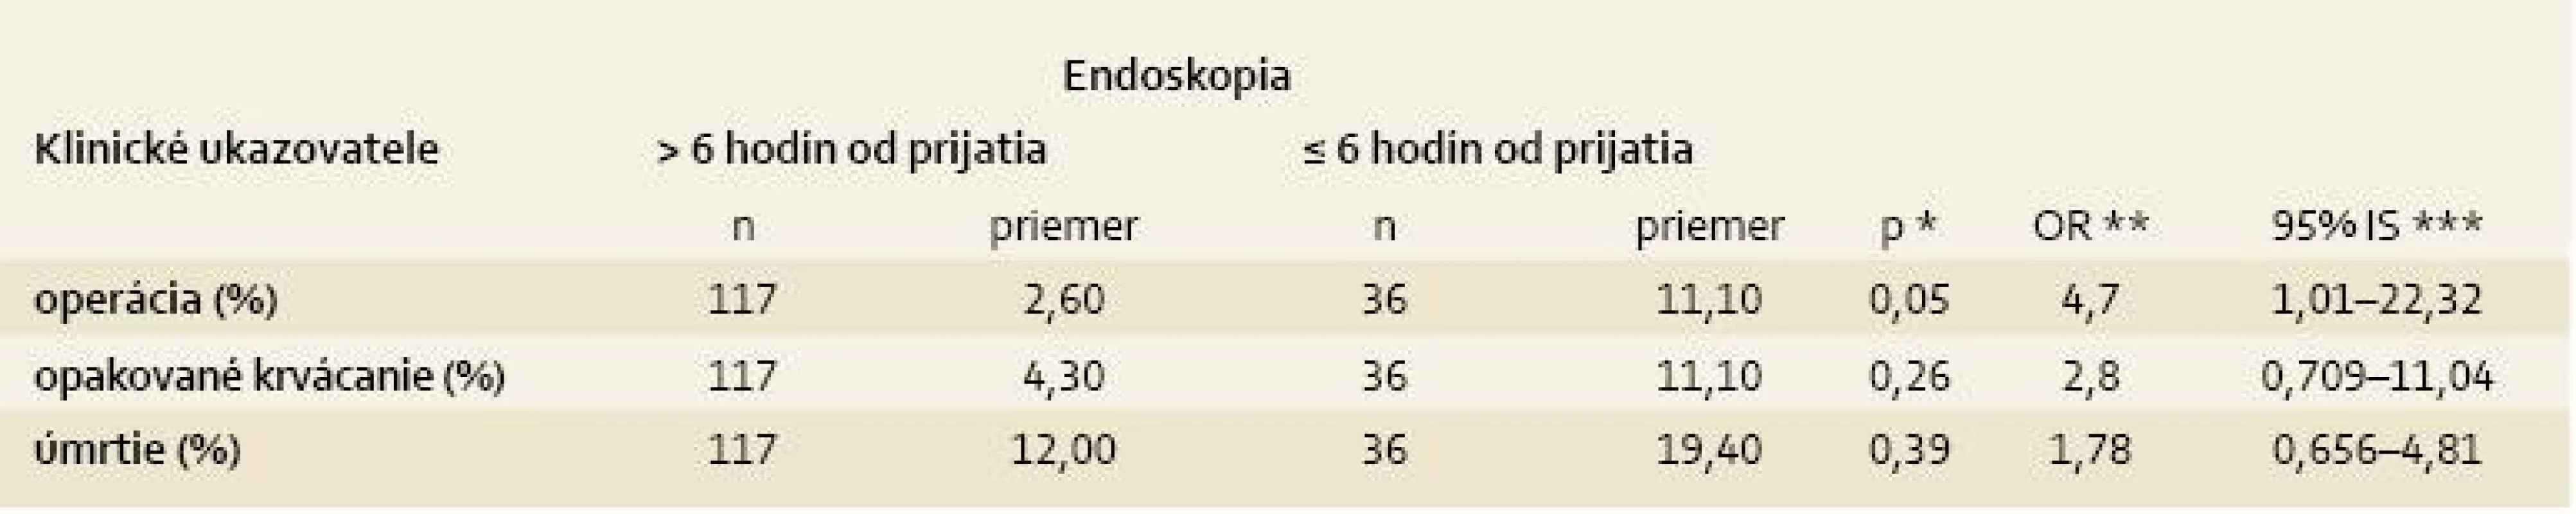 Načasovanie endoskopického vyšetrenia a jeho vplyv na klinický priebeh.
Tab. 5. Timing of endoscopy and its impact on the clinical outcome.